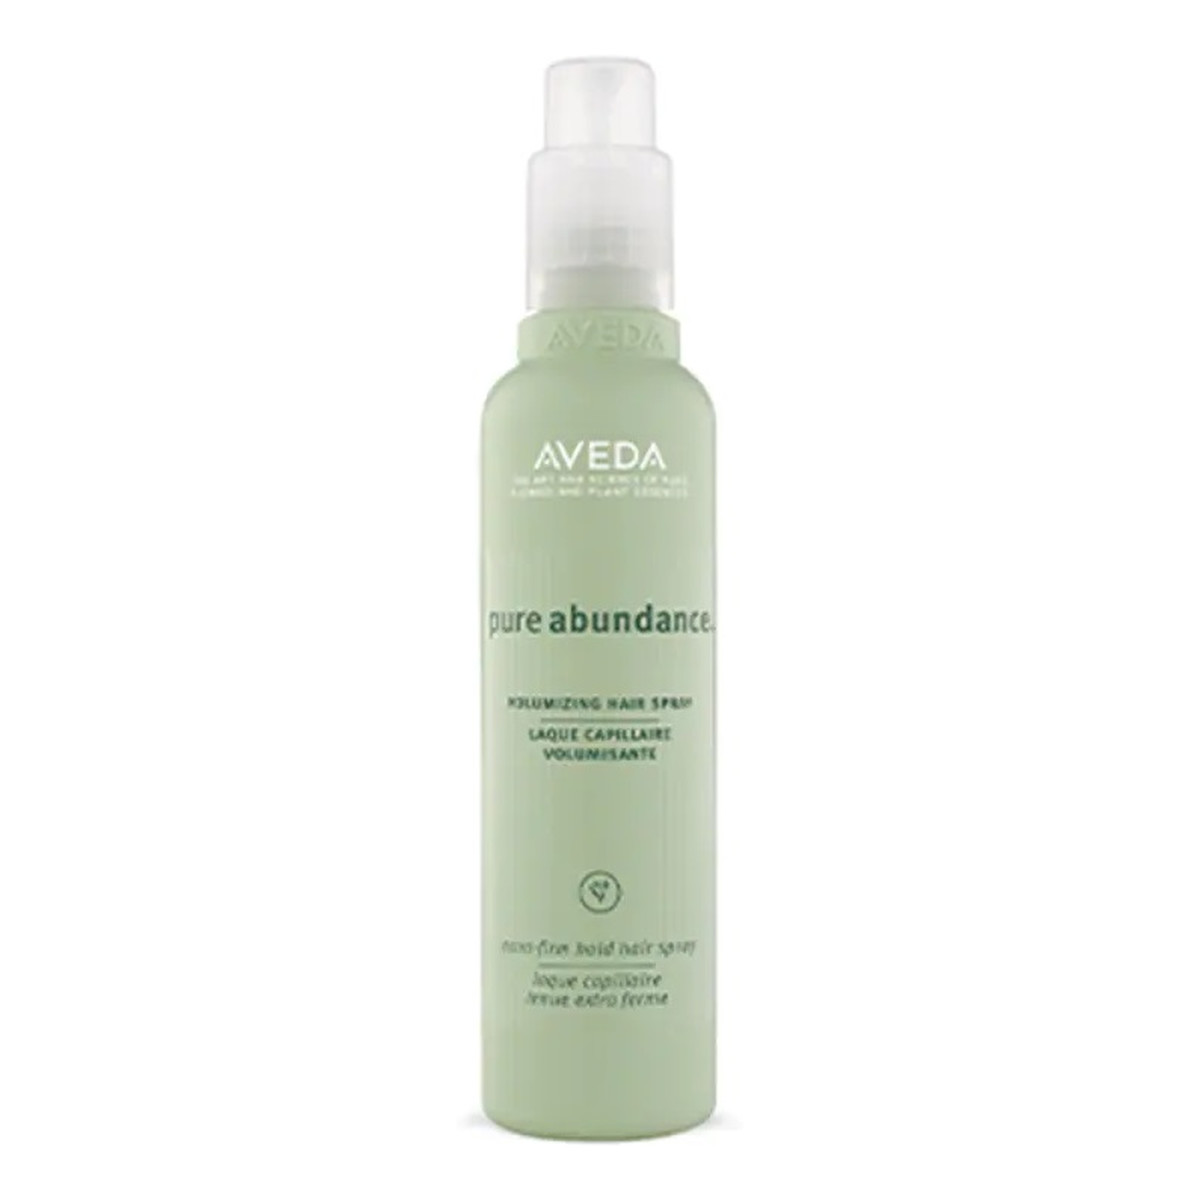 Aveda Pure abundance volumizing hair spray lakier do włosów zwiększający objętość 200ml